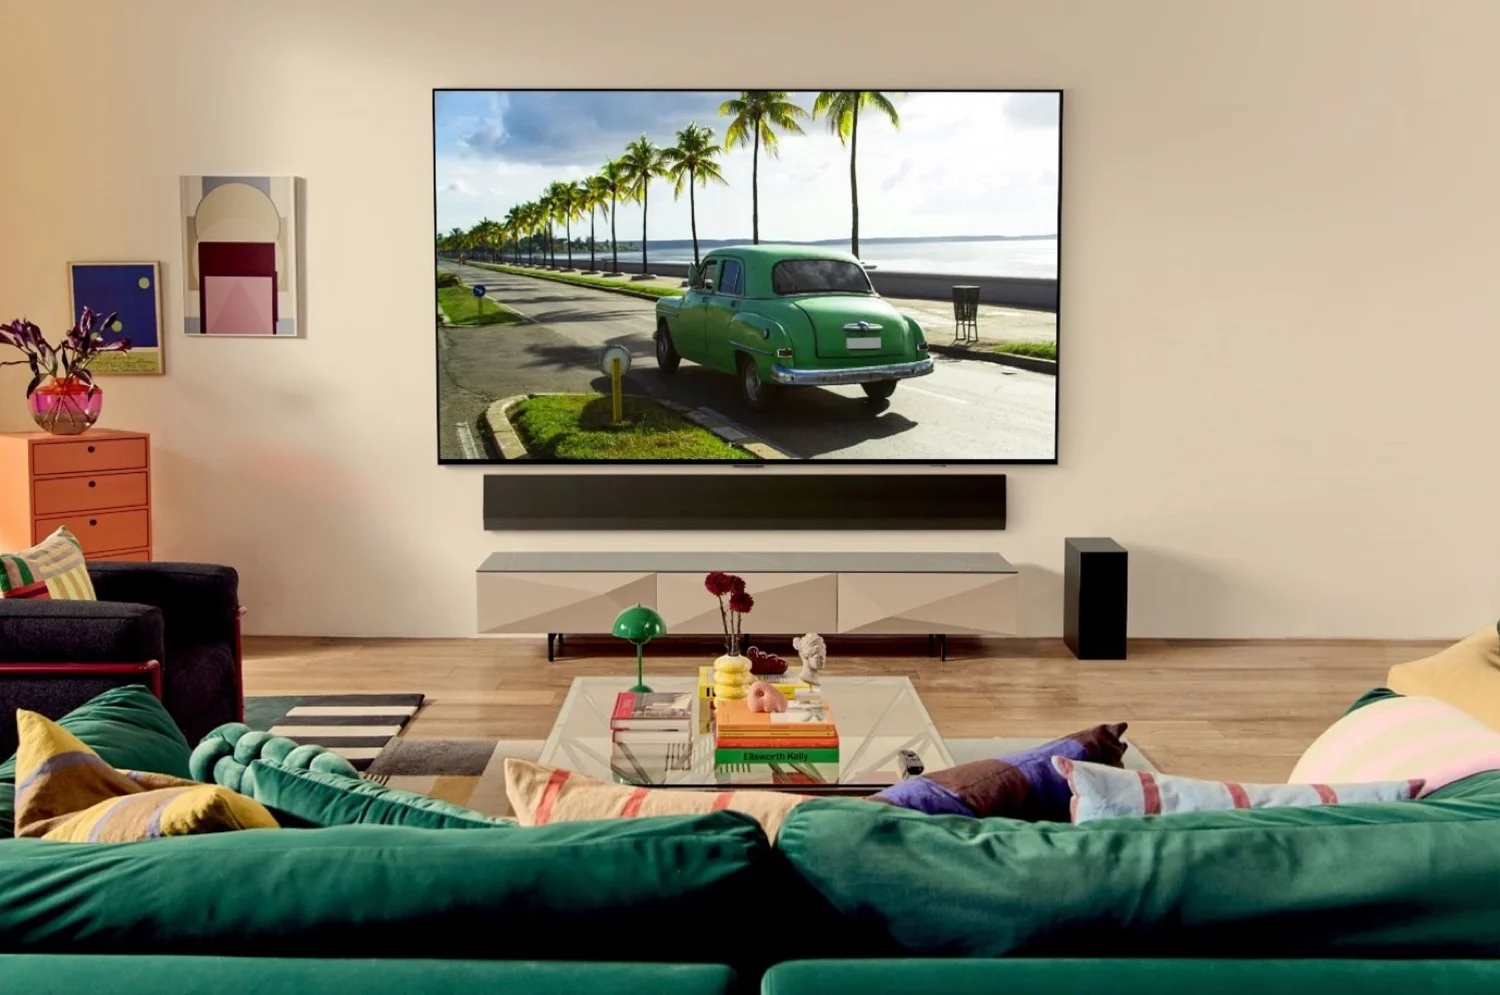 LG OLED TV: Una década en la cima y sin signos de desaceleración